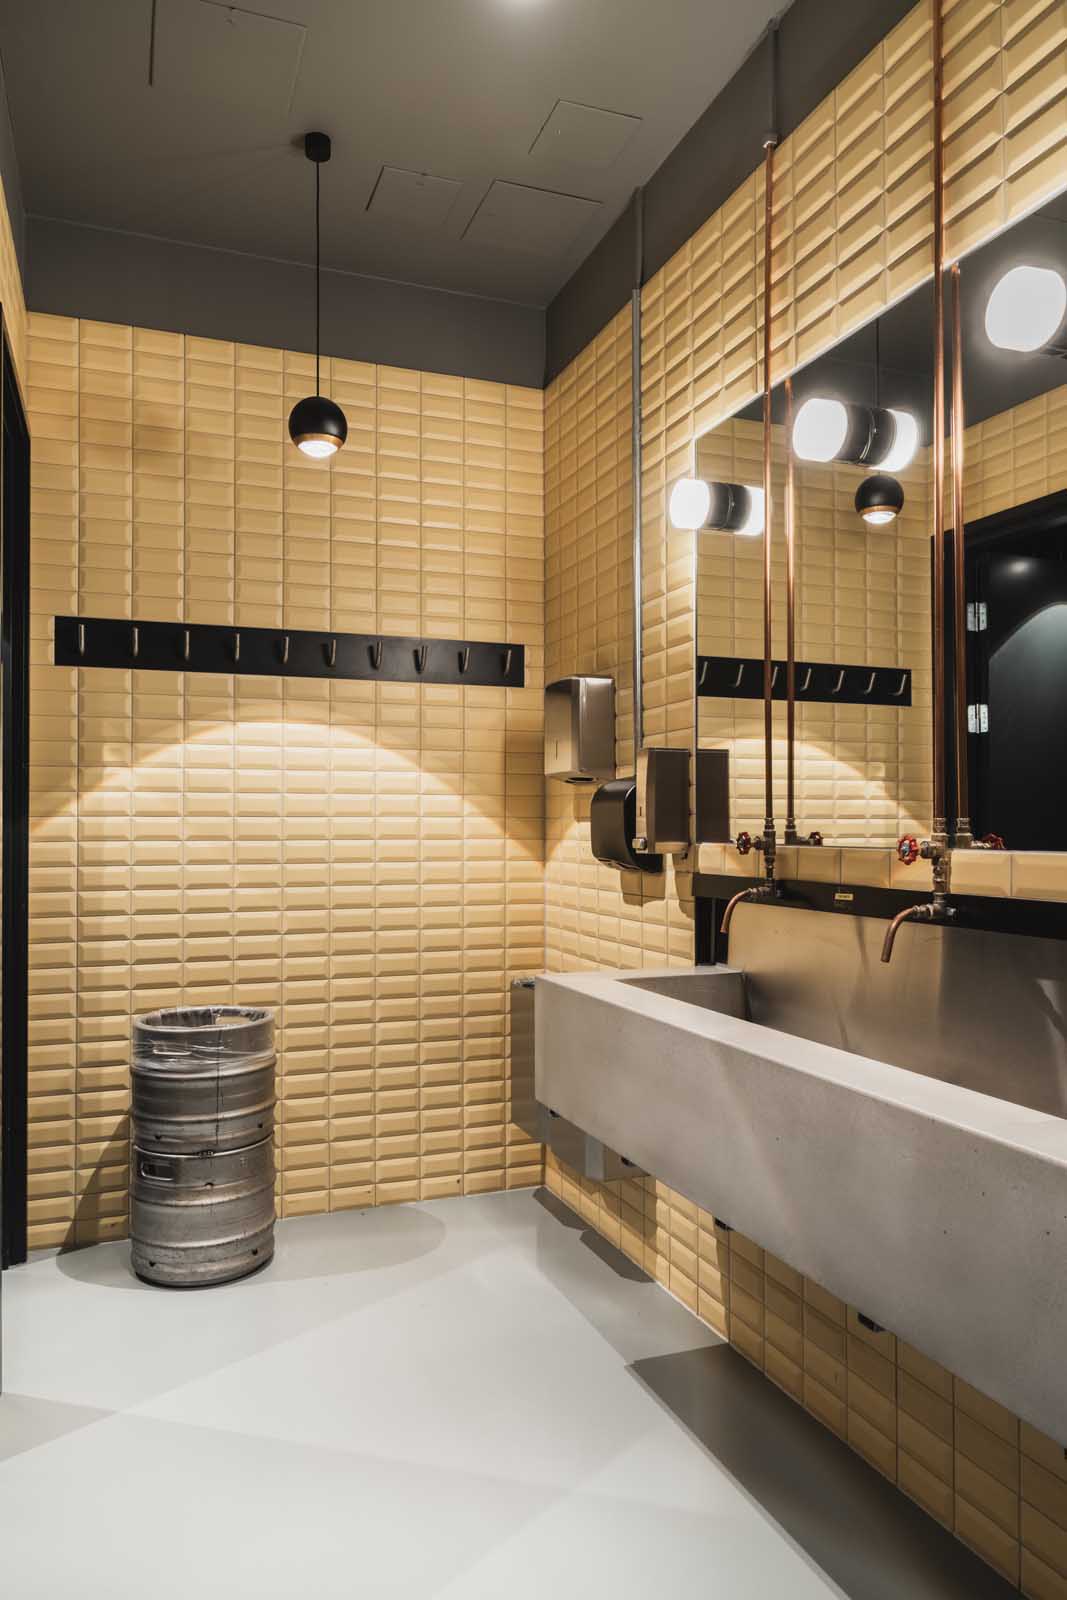 Toaletter er belyst med pendler fra tak og gjenbruk av eksisterende lyskilder ved speilseksjoner